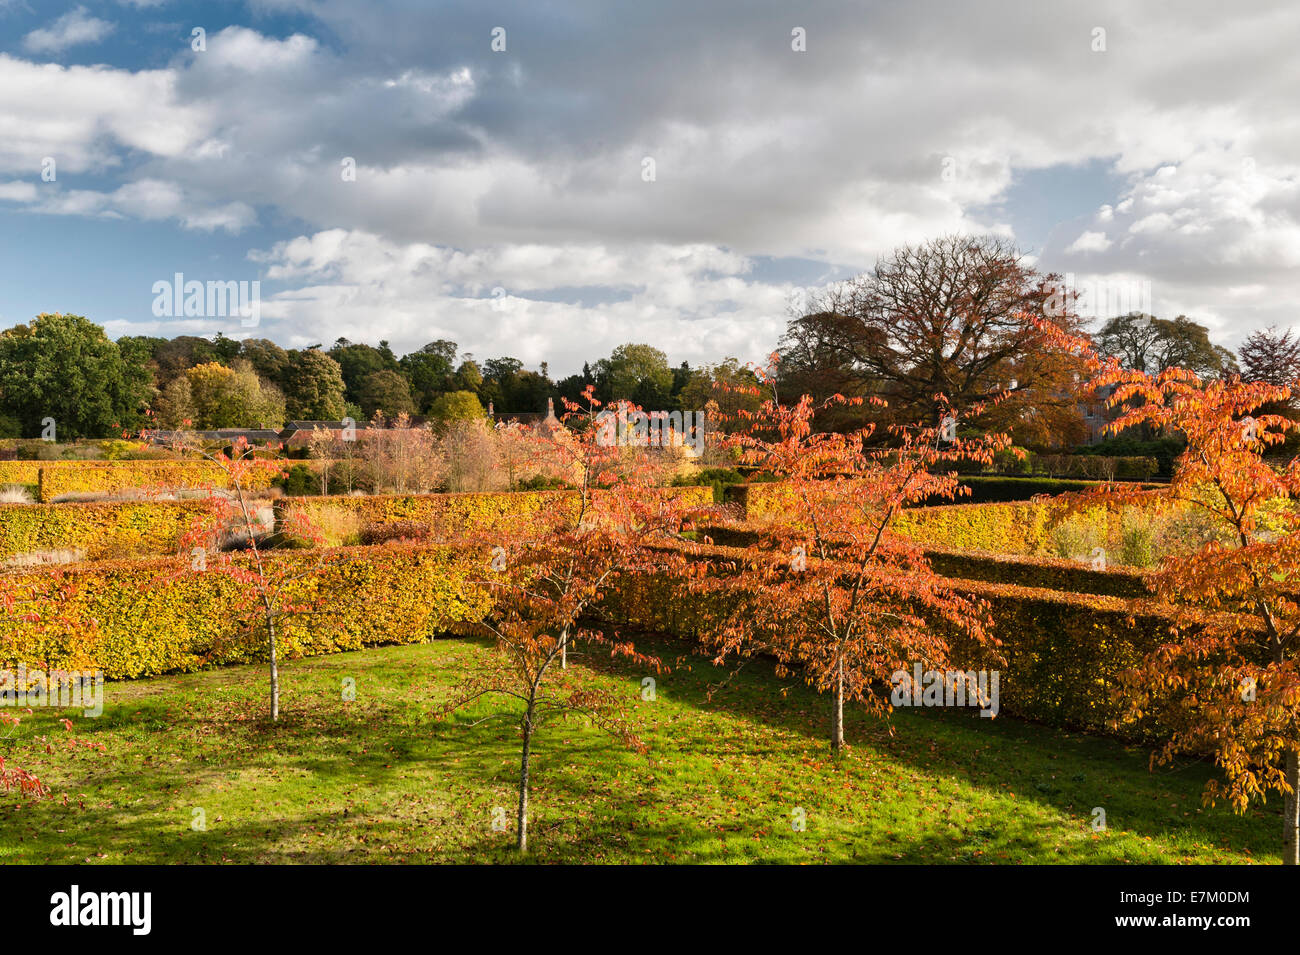 Scampston Walled Garden, nello Yorkshire, progettato da Piet Oudolf. Le siepi di faggio sono spettacolari in autunno Foto Stock